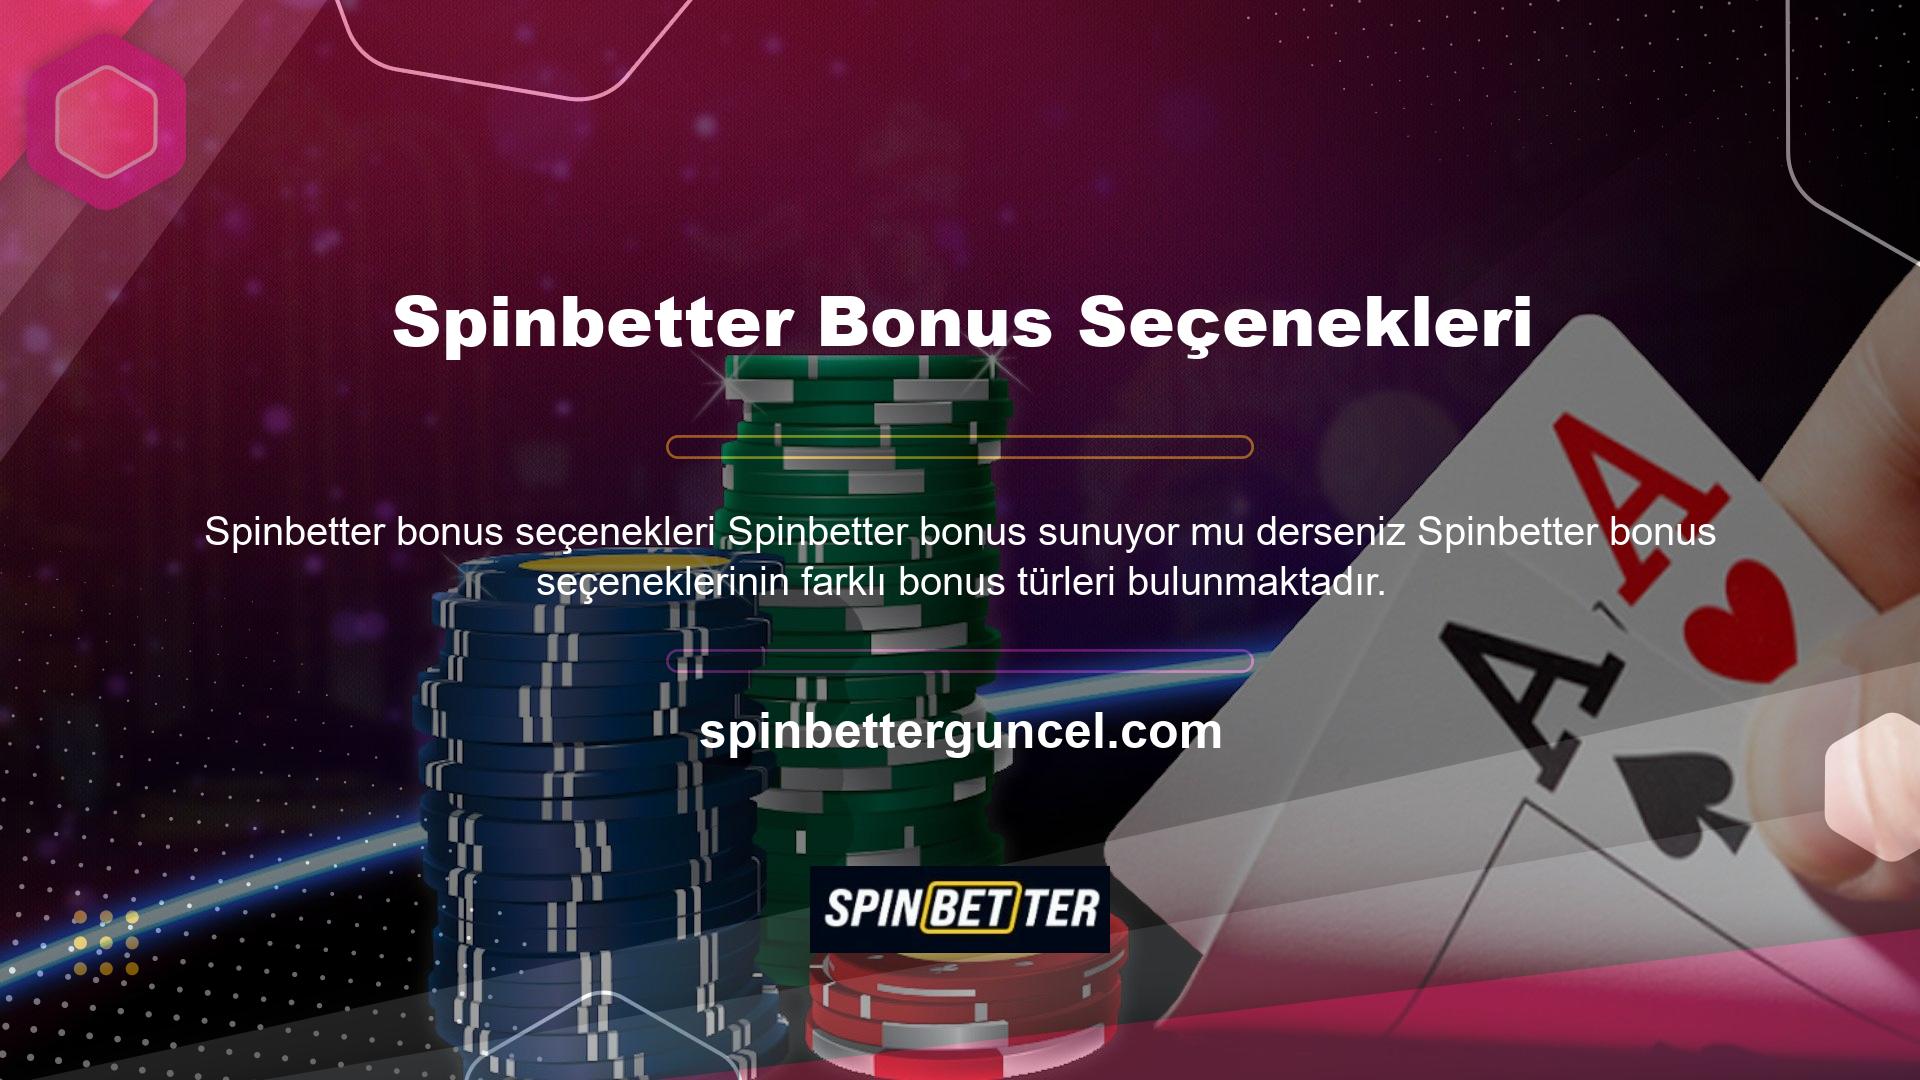 Üyelere neredeyse her zaman bonus veren Spinbetter Bonus Seçenekleri ana sayfa oyununda üyeler büyük avantajlardan yararlanabilirler